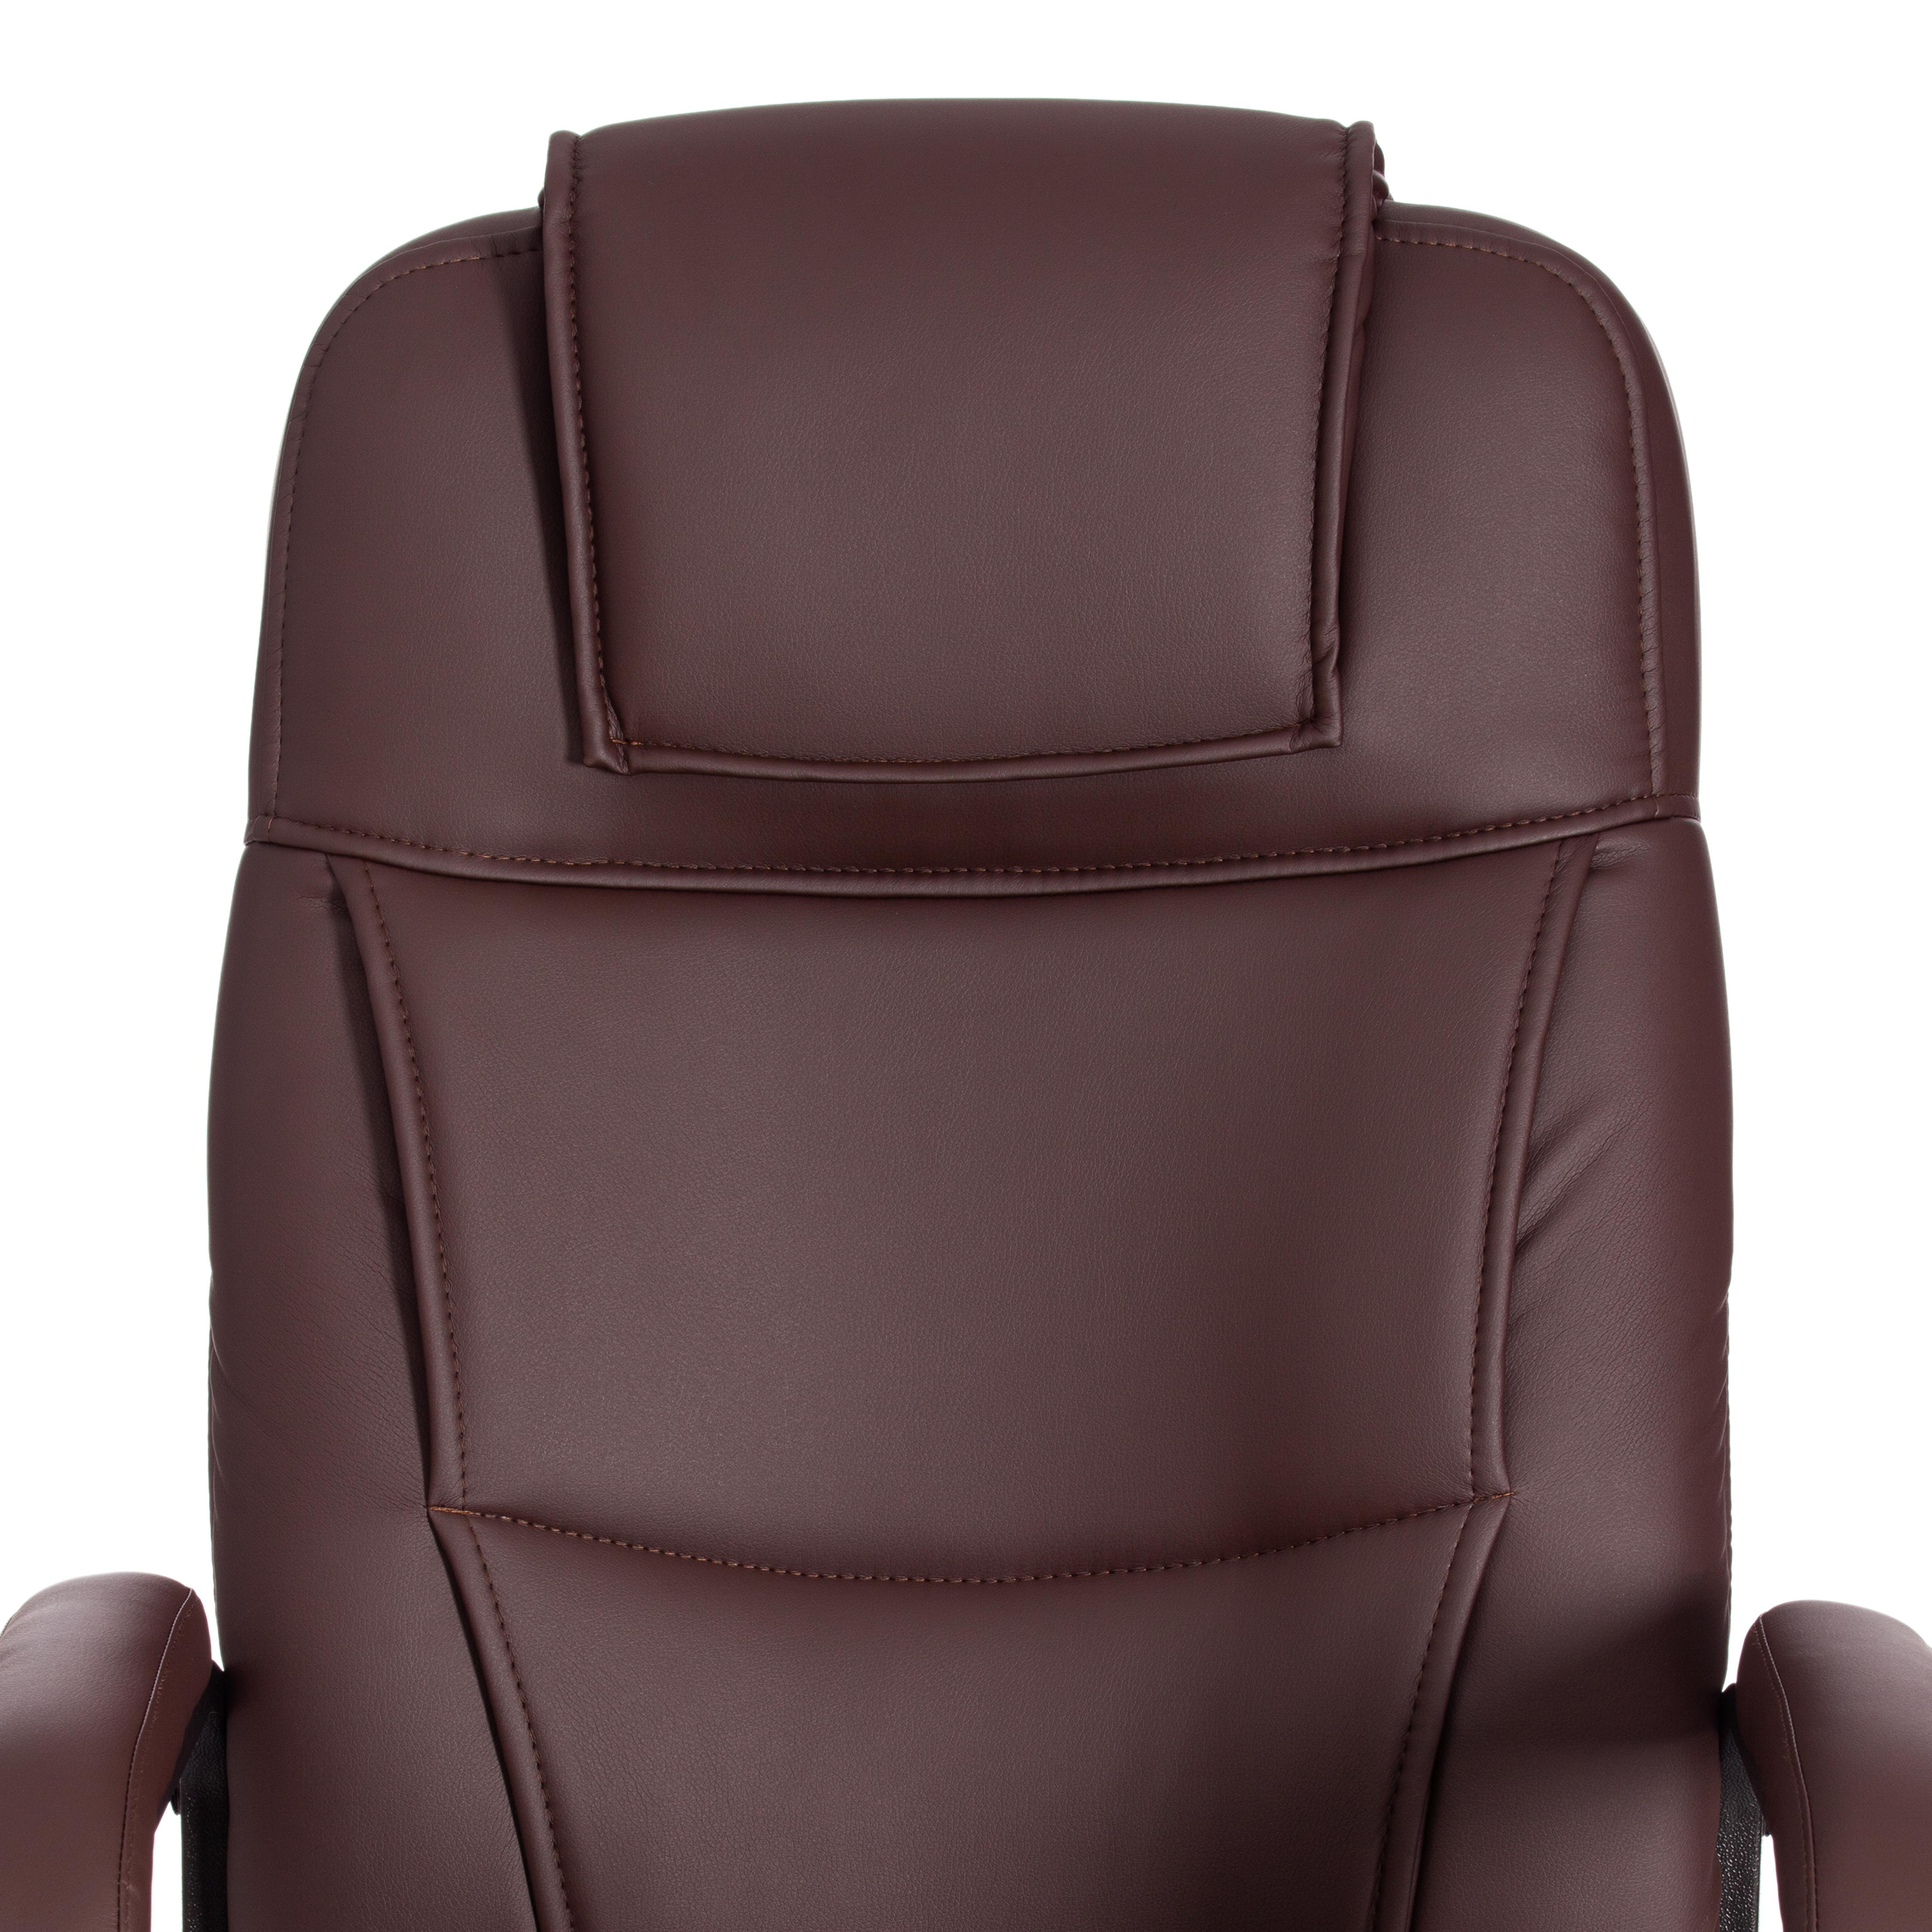 Кресло BERGAMO хром (22) кож/зам, коричневый, 36-36